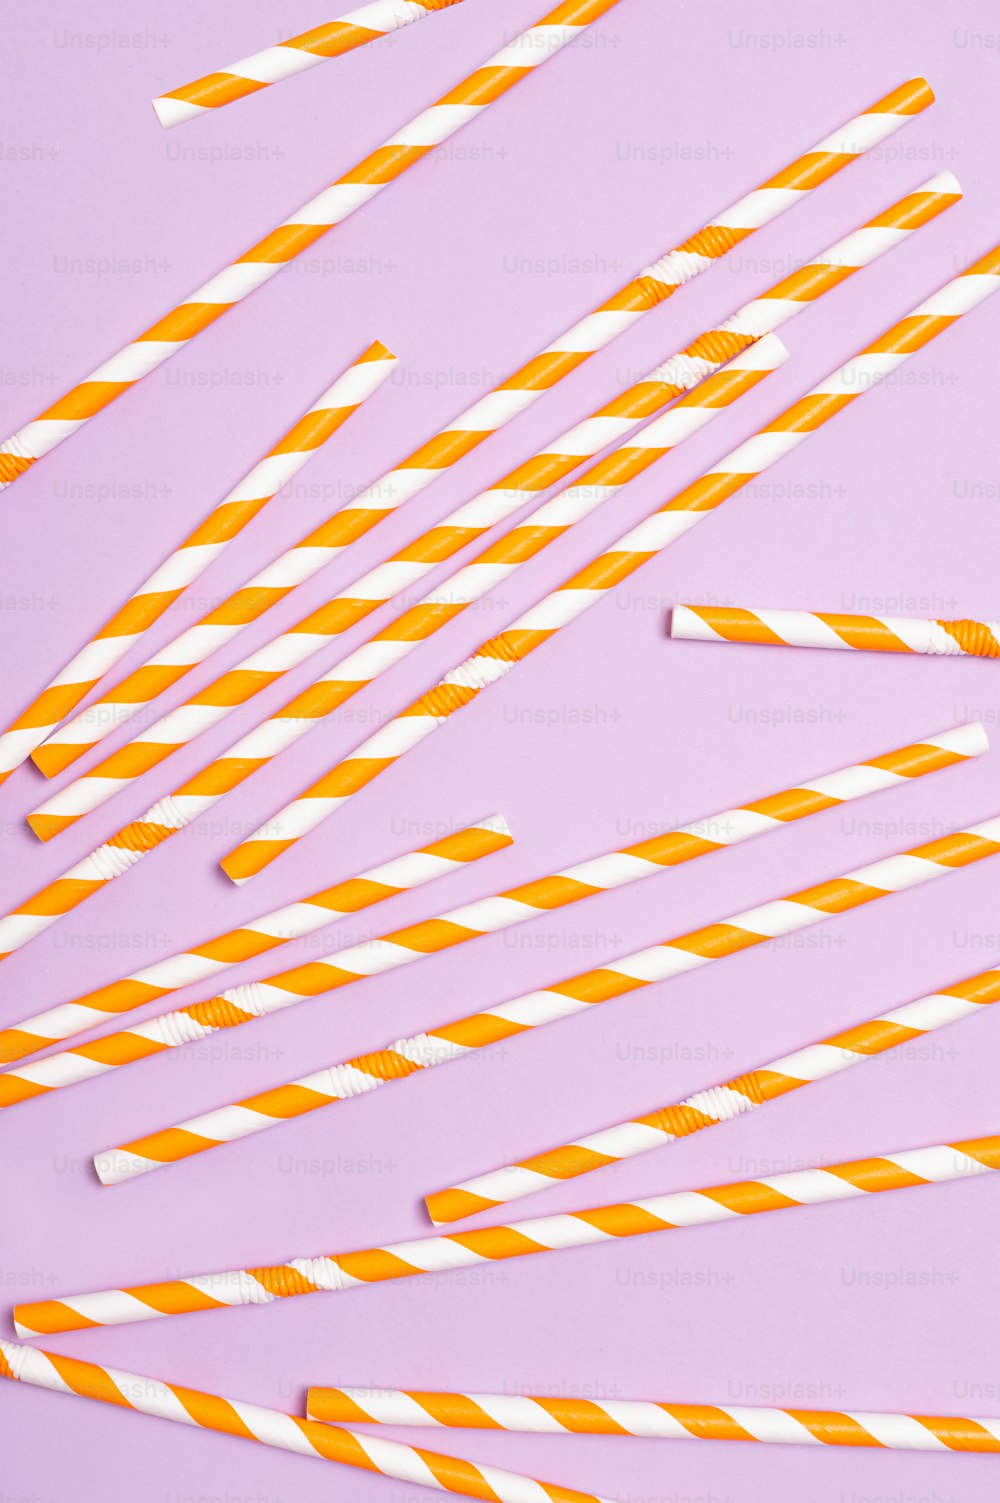 cannucce di carta a strisce arancioni e bianche su uno sfondo viola